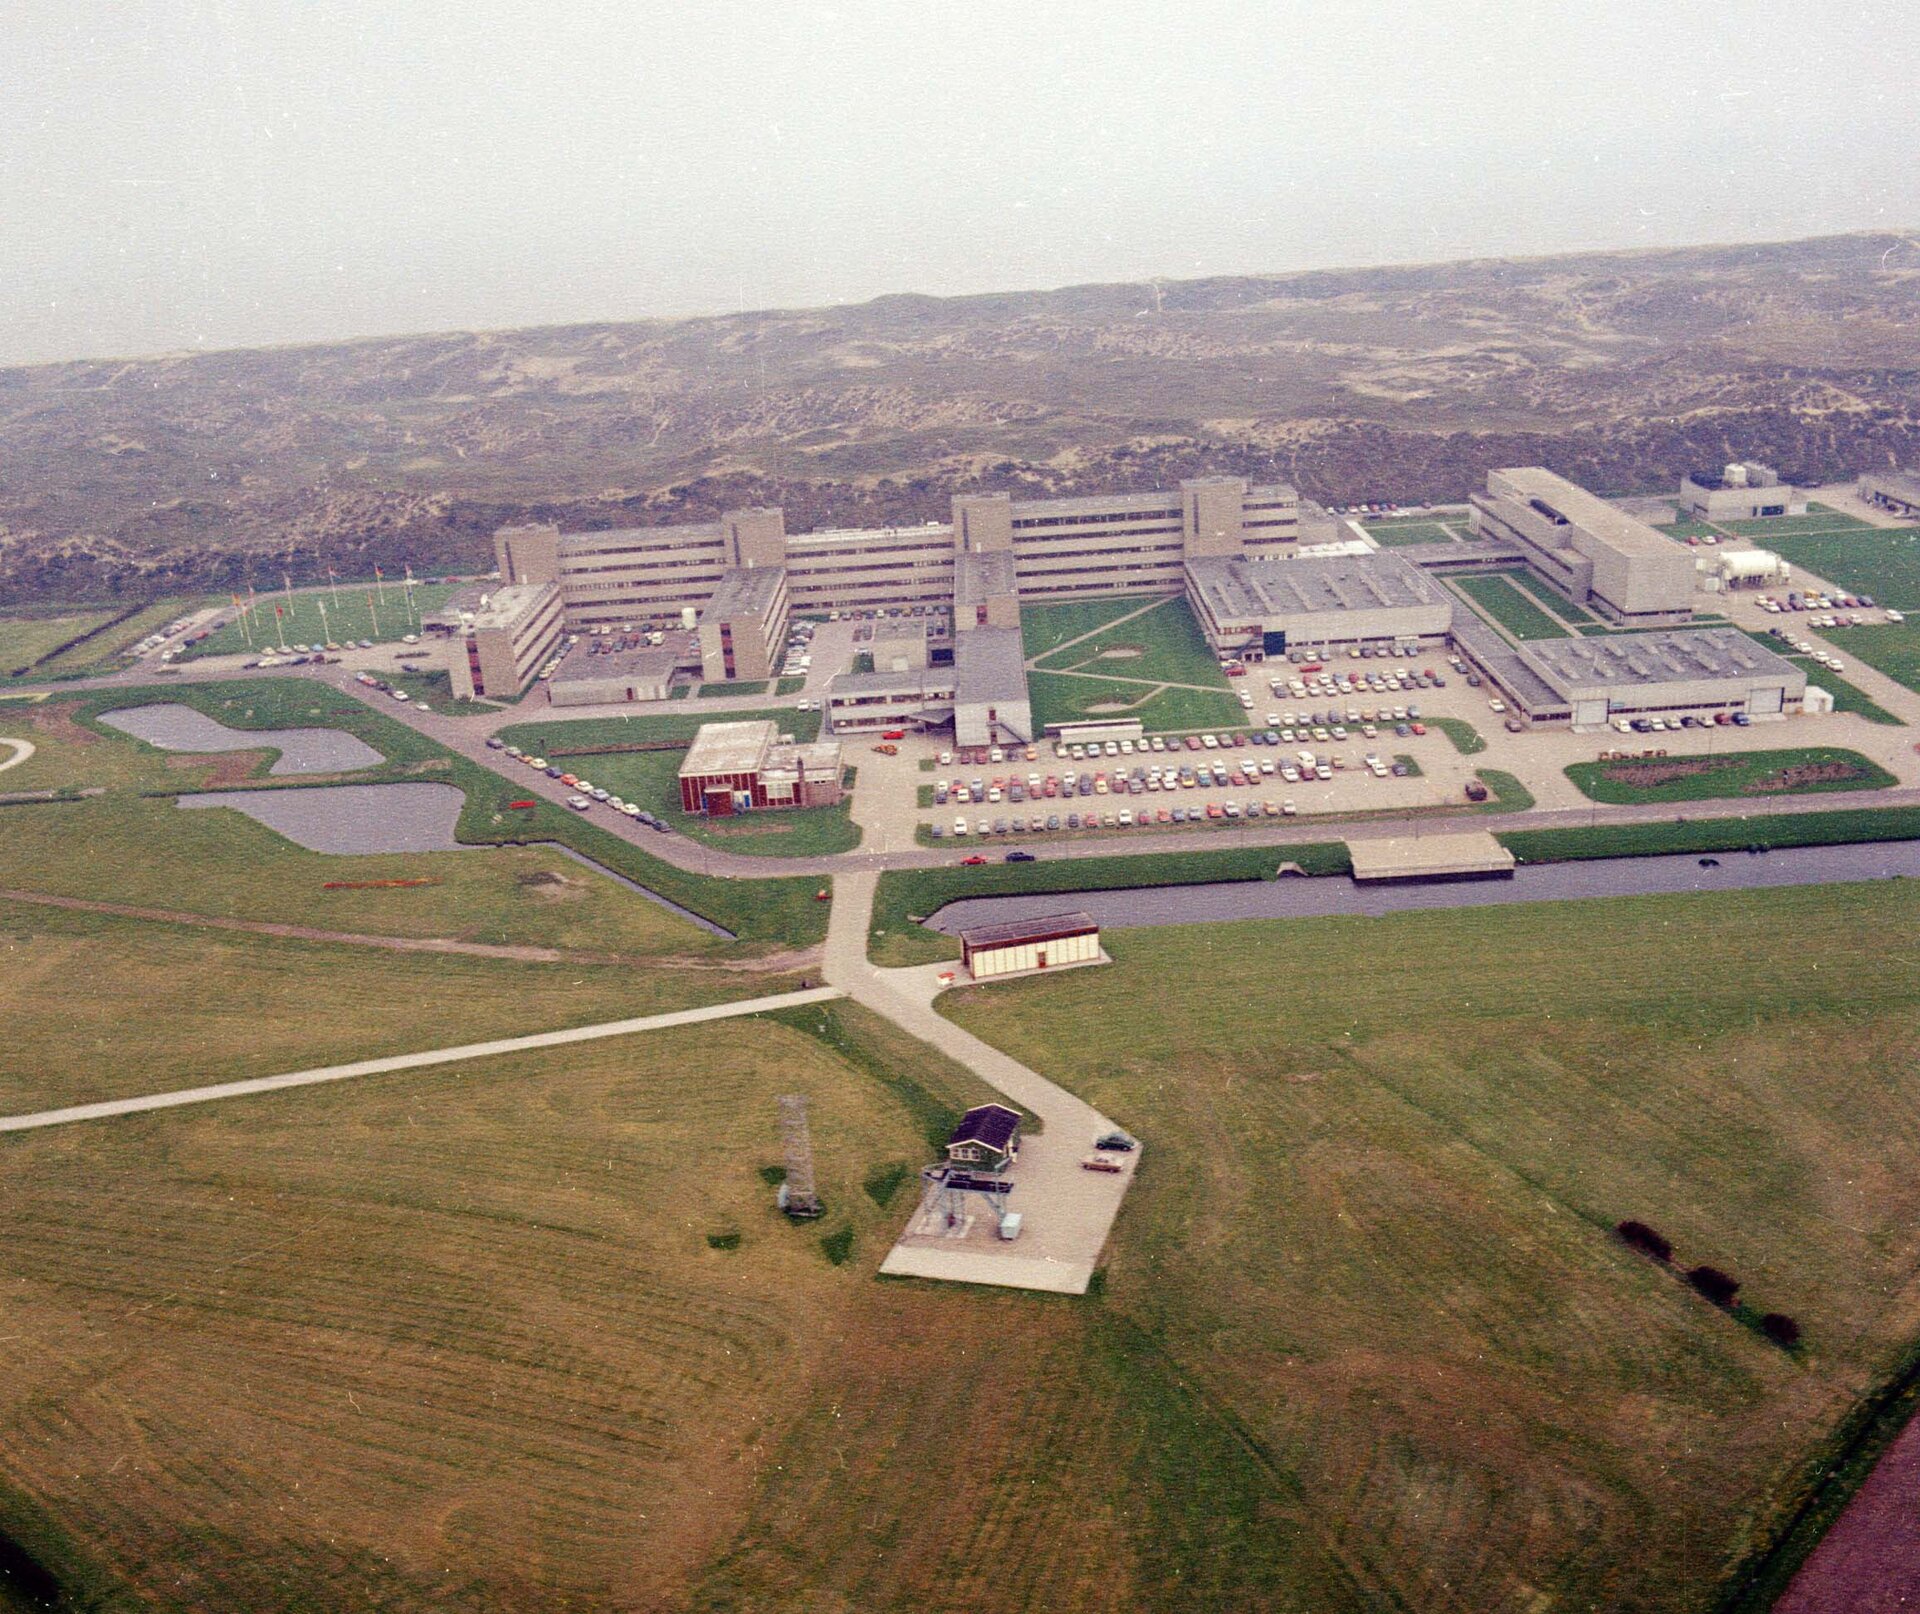 Aerial view of ESTEC in 1972